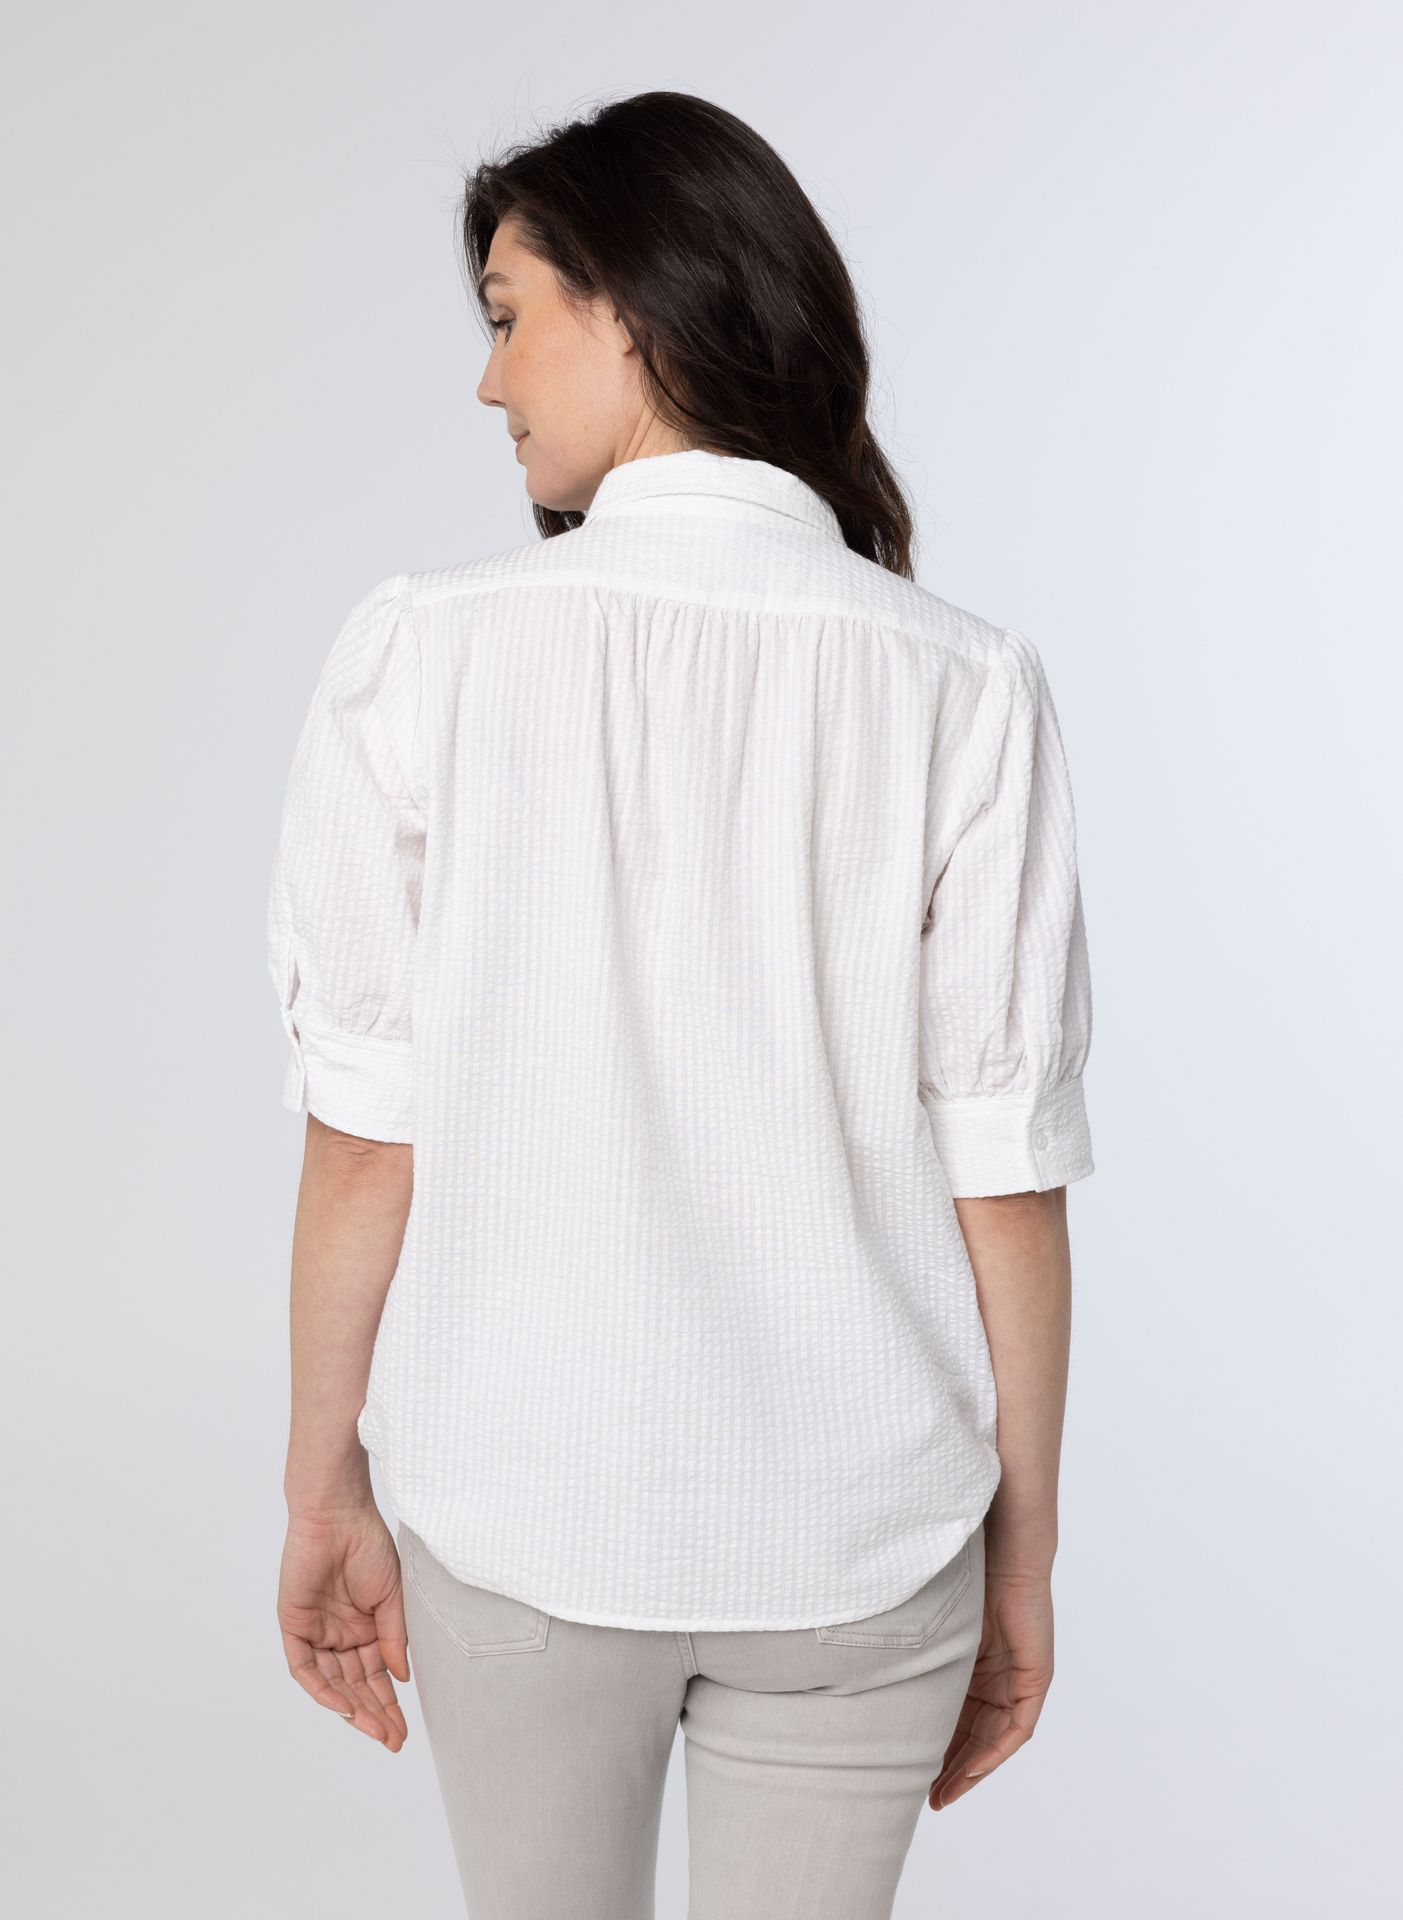 Norah Witte blouse white 213853-100